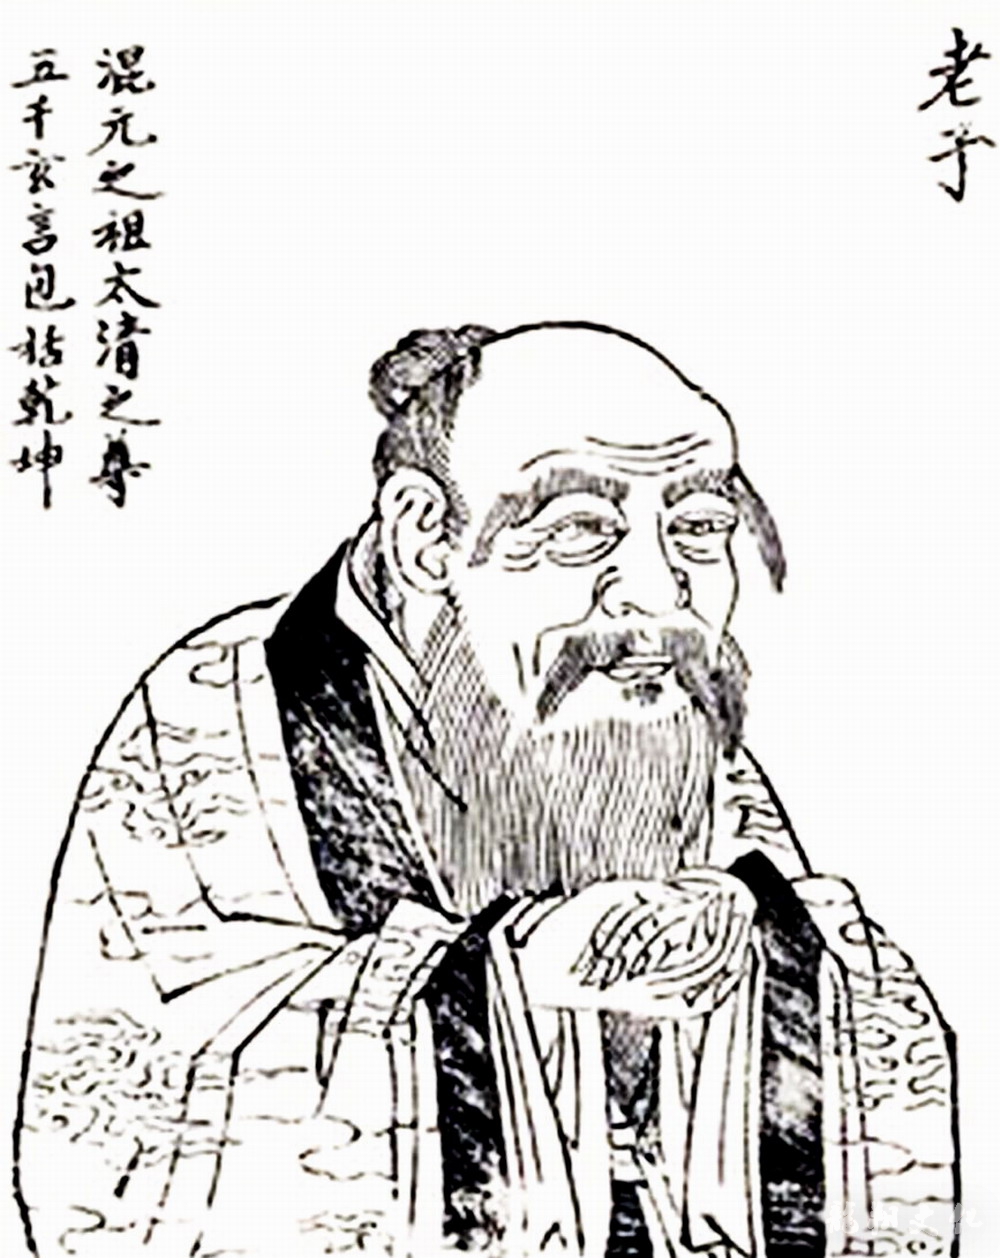 老庄思想与儒家思想的根本区别_儒家思想和_儒家思想根本思想